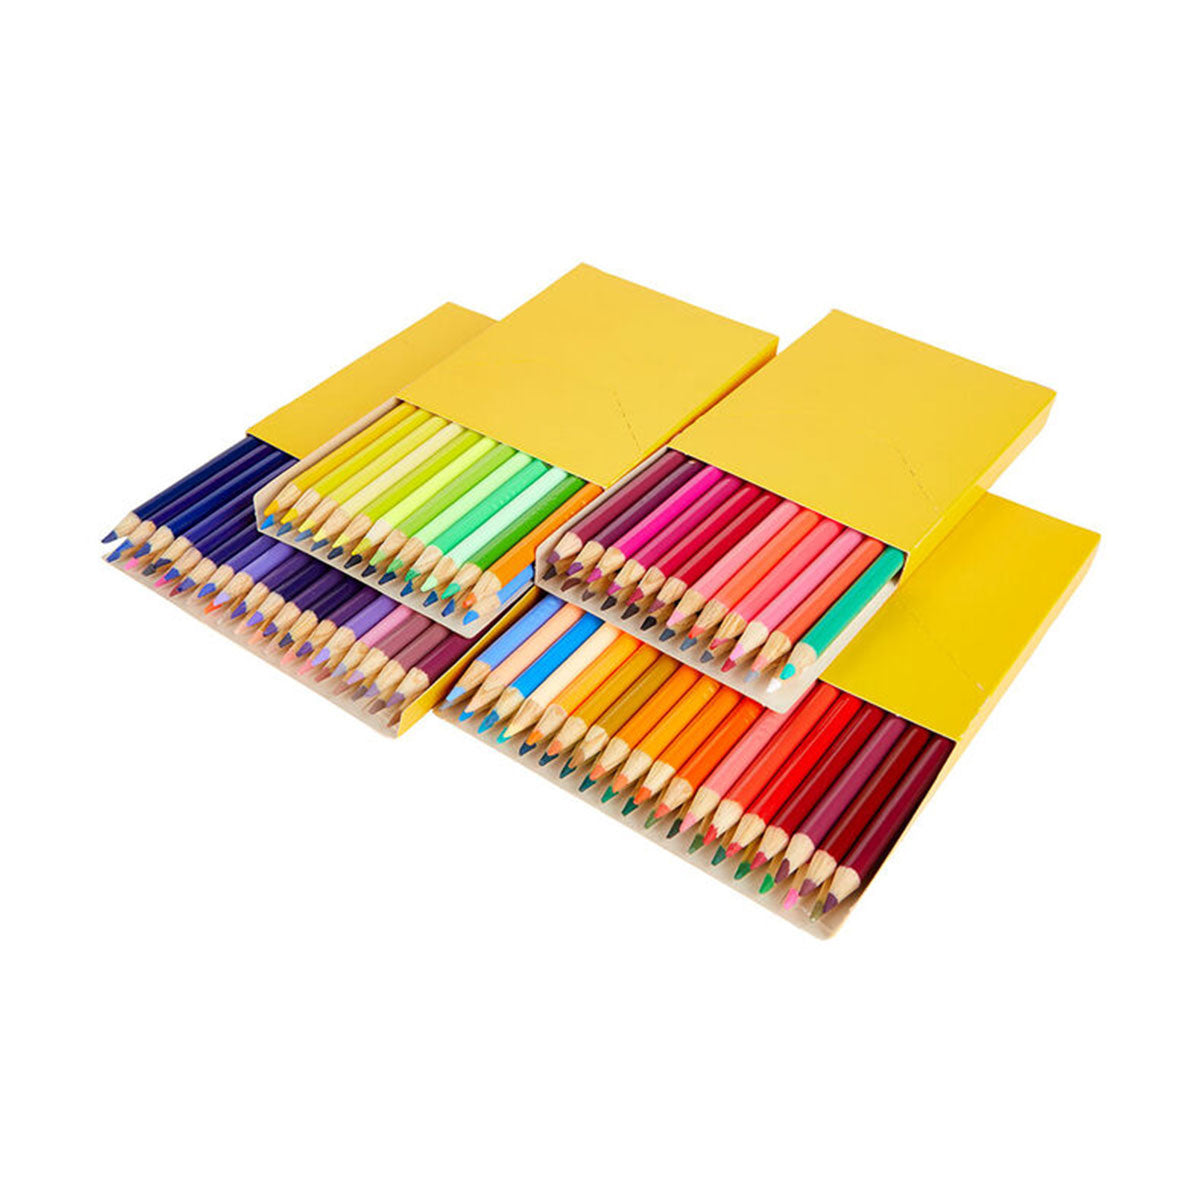 Crayola - 120 ct Colored Pencils